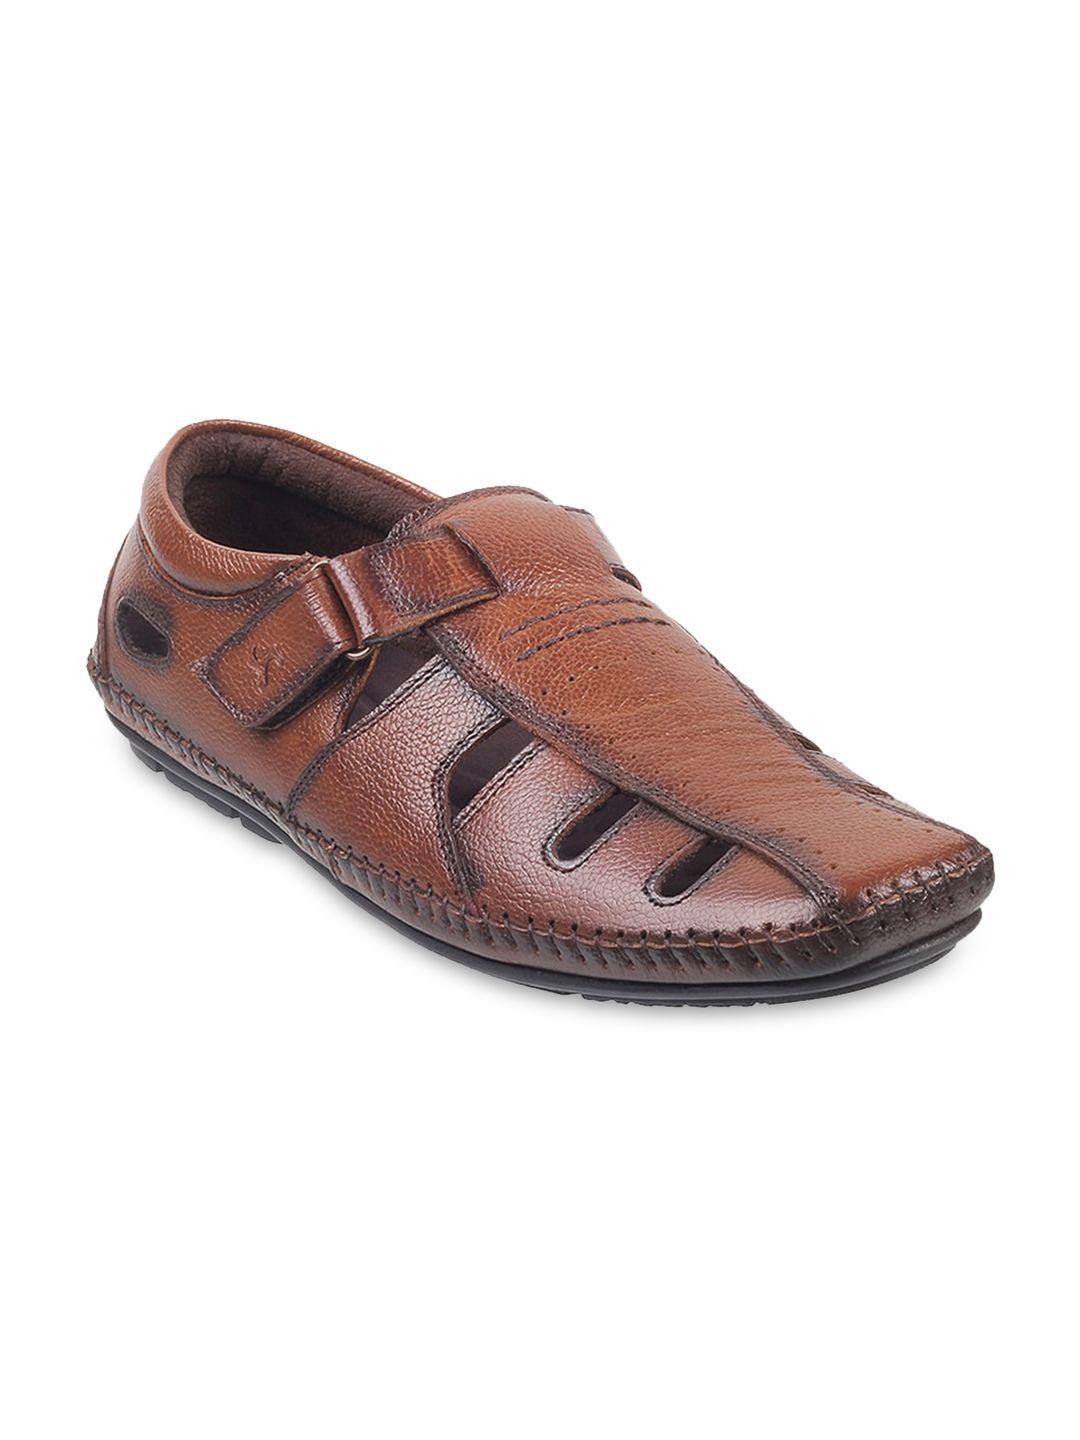 mochi men leather shoe-style sandals